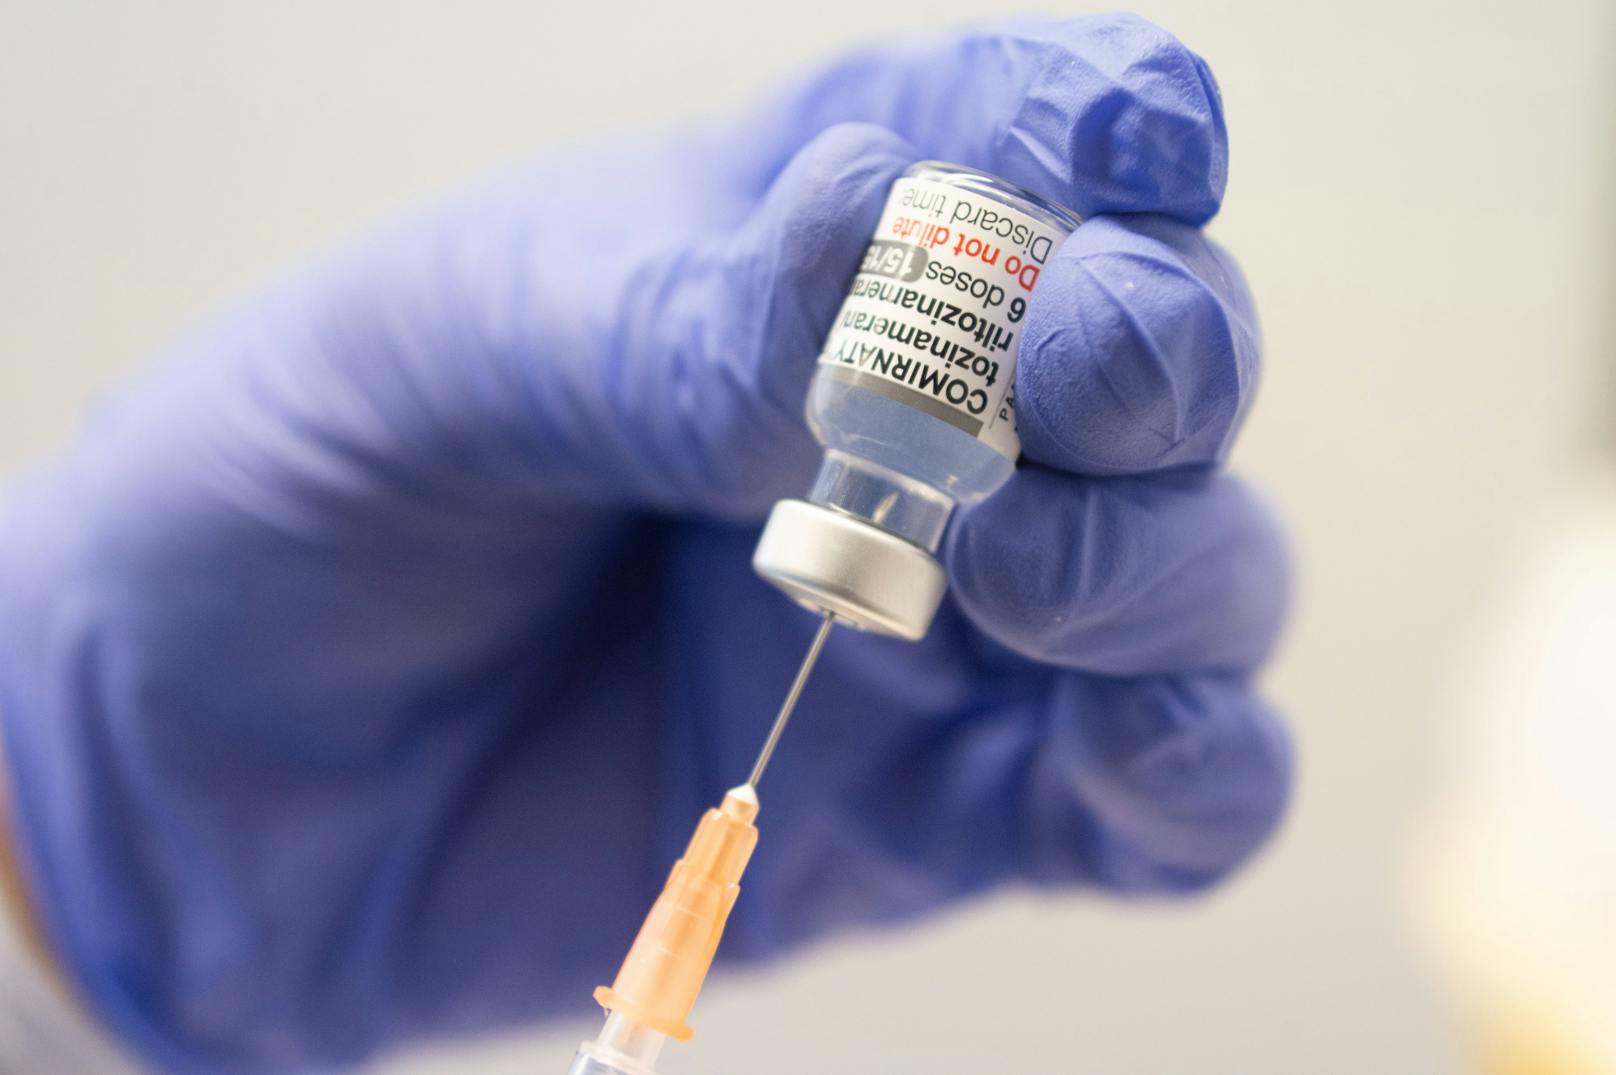 Studie zeigt, was der BA.5-Impfstoff wirklich bringt